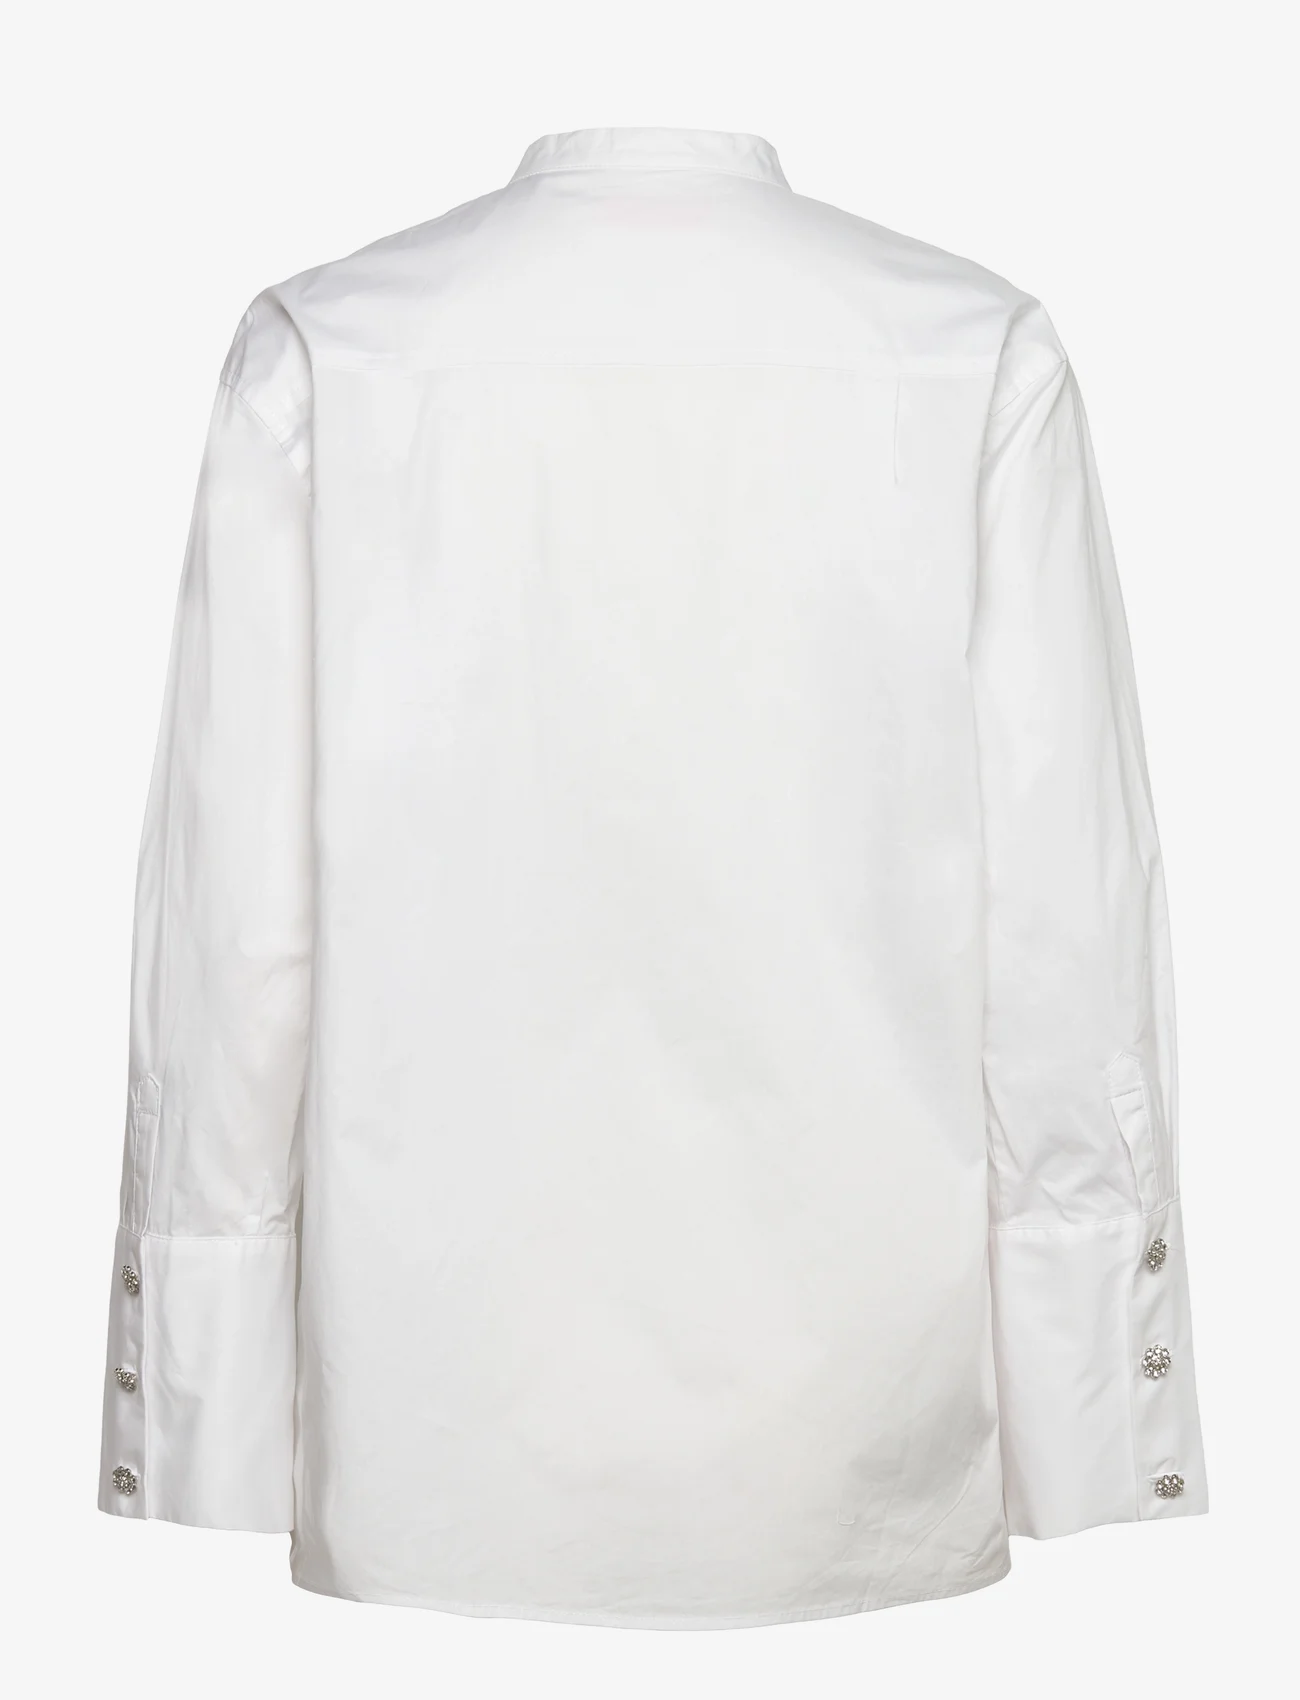 Custommade - Banni - pitkähihaiset paidat - 001 bright white - 1